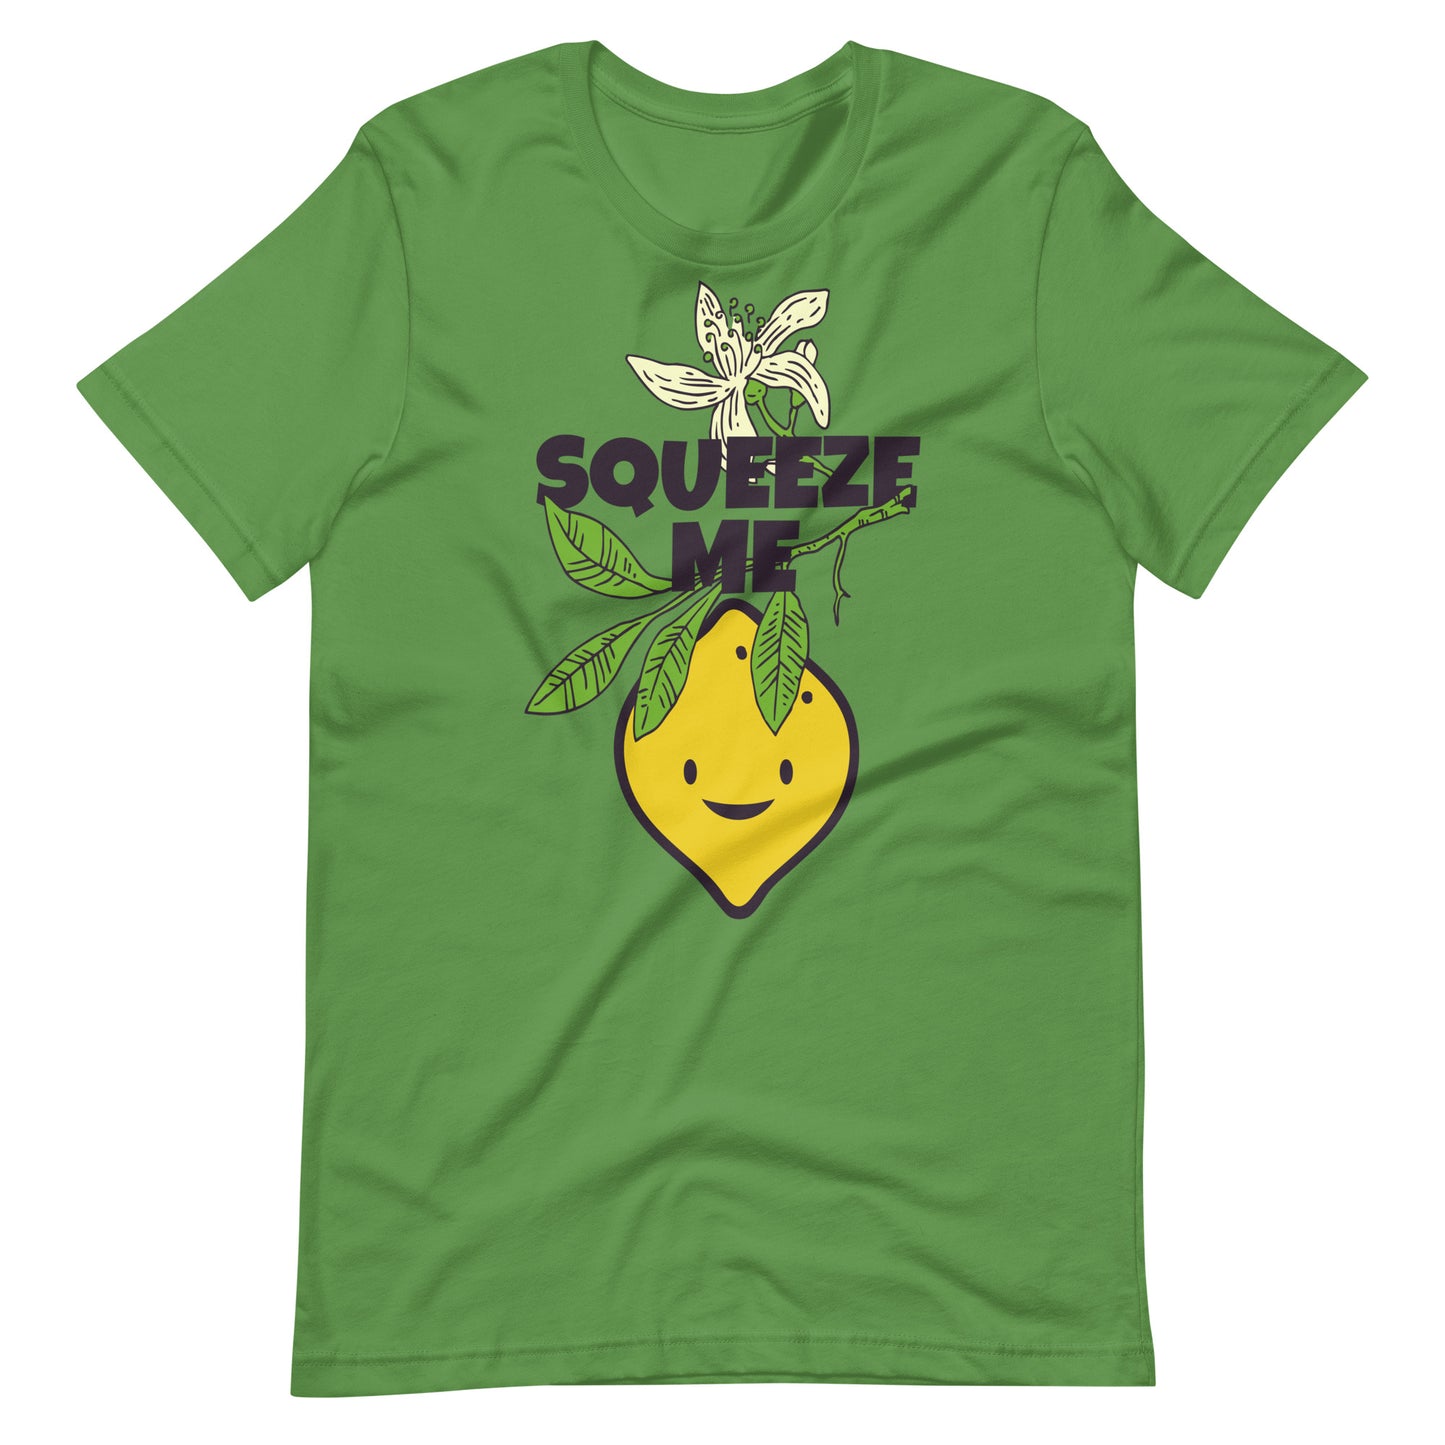 Printagon - Squeeze Me - Unisex T-shirt - Leaf / S